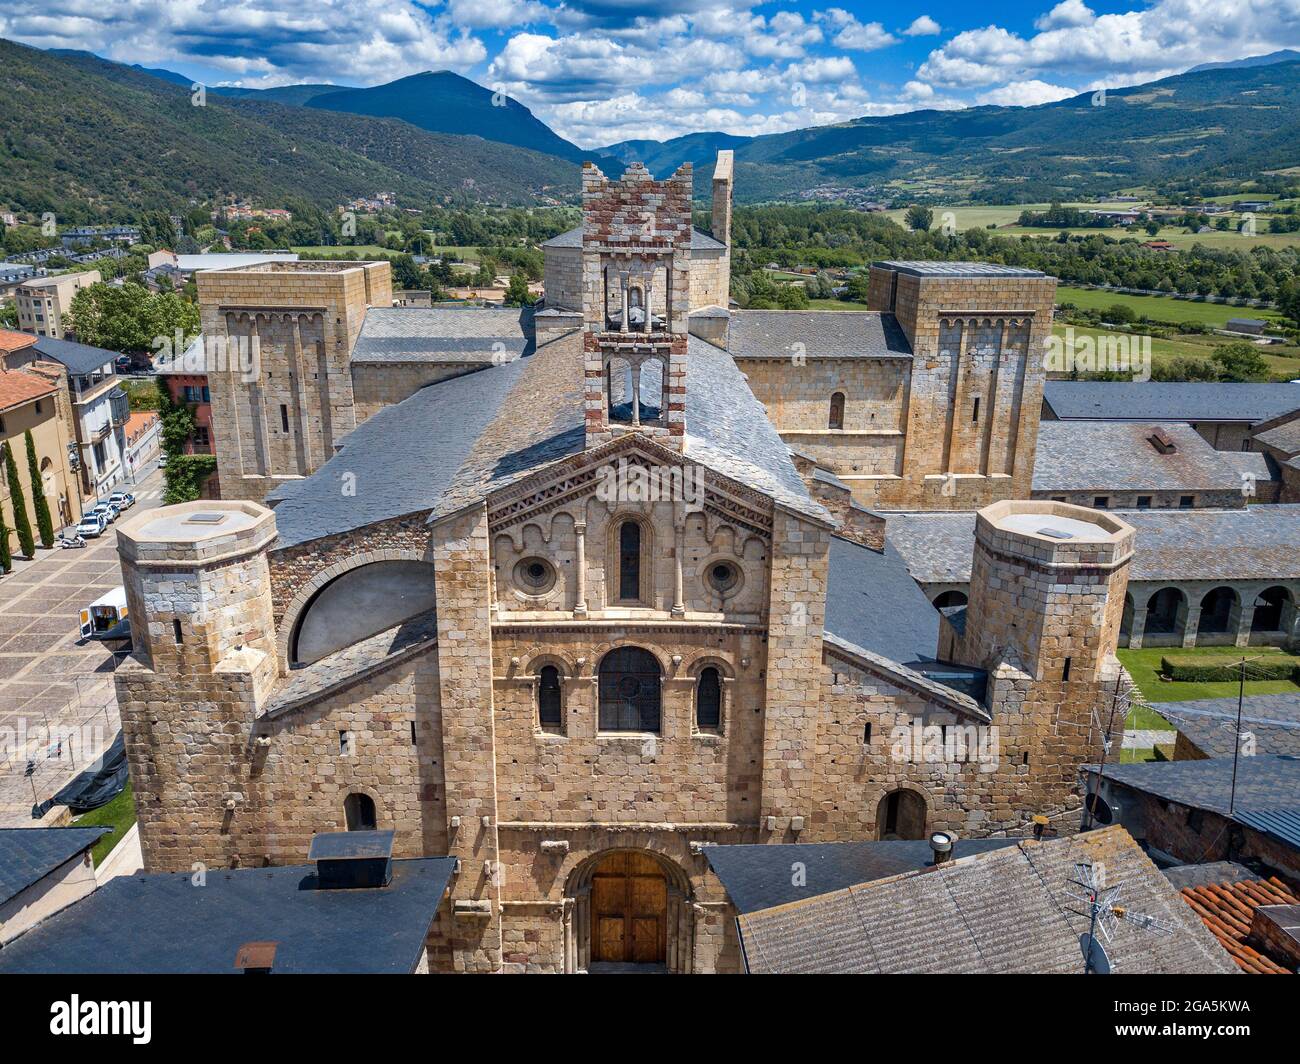 Vue aérienne de la façade de la cathédrale romane de Santa Maria à la Seu d'Urgell, Lleida, Catalogne, Espagne. La cathédrale de Santa Maria d'Urg Banque D'Images